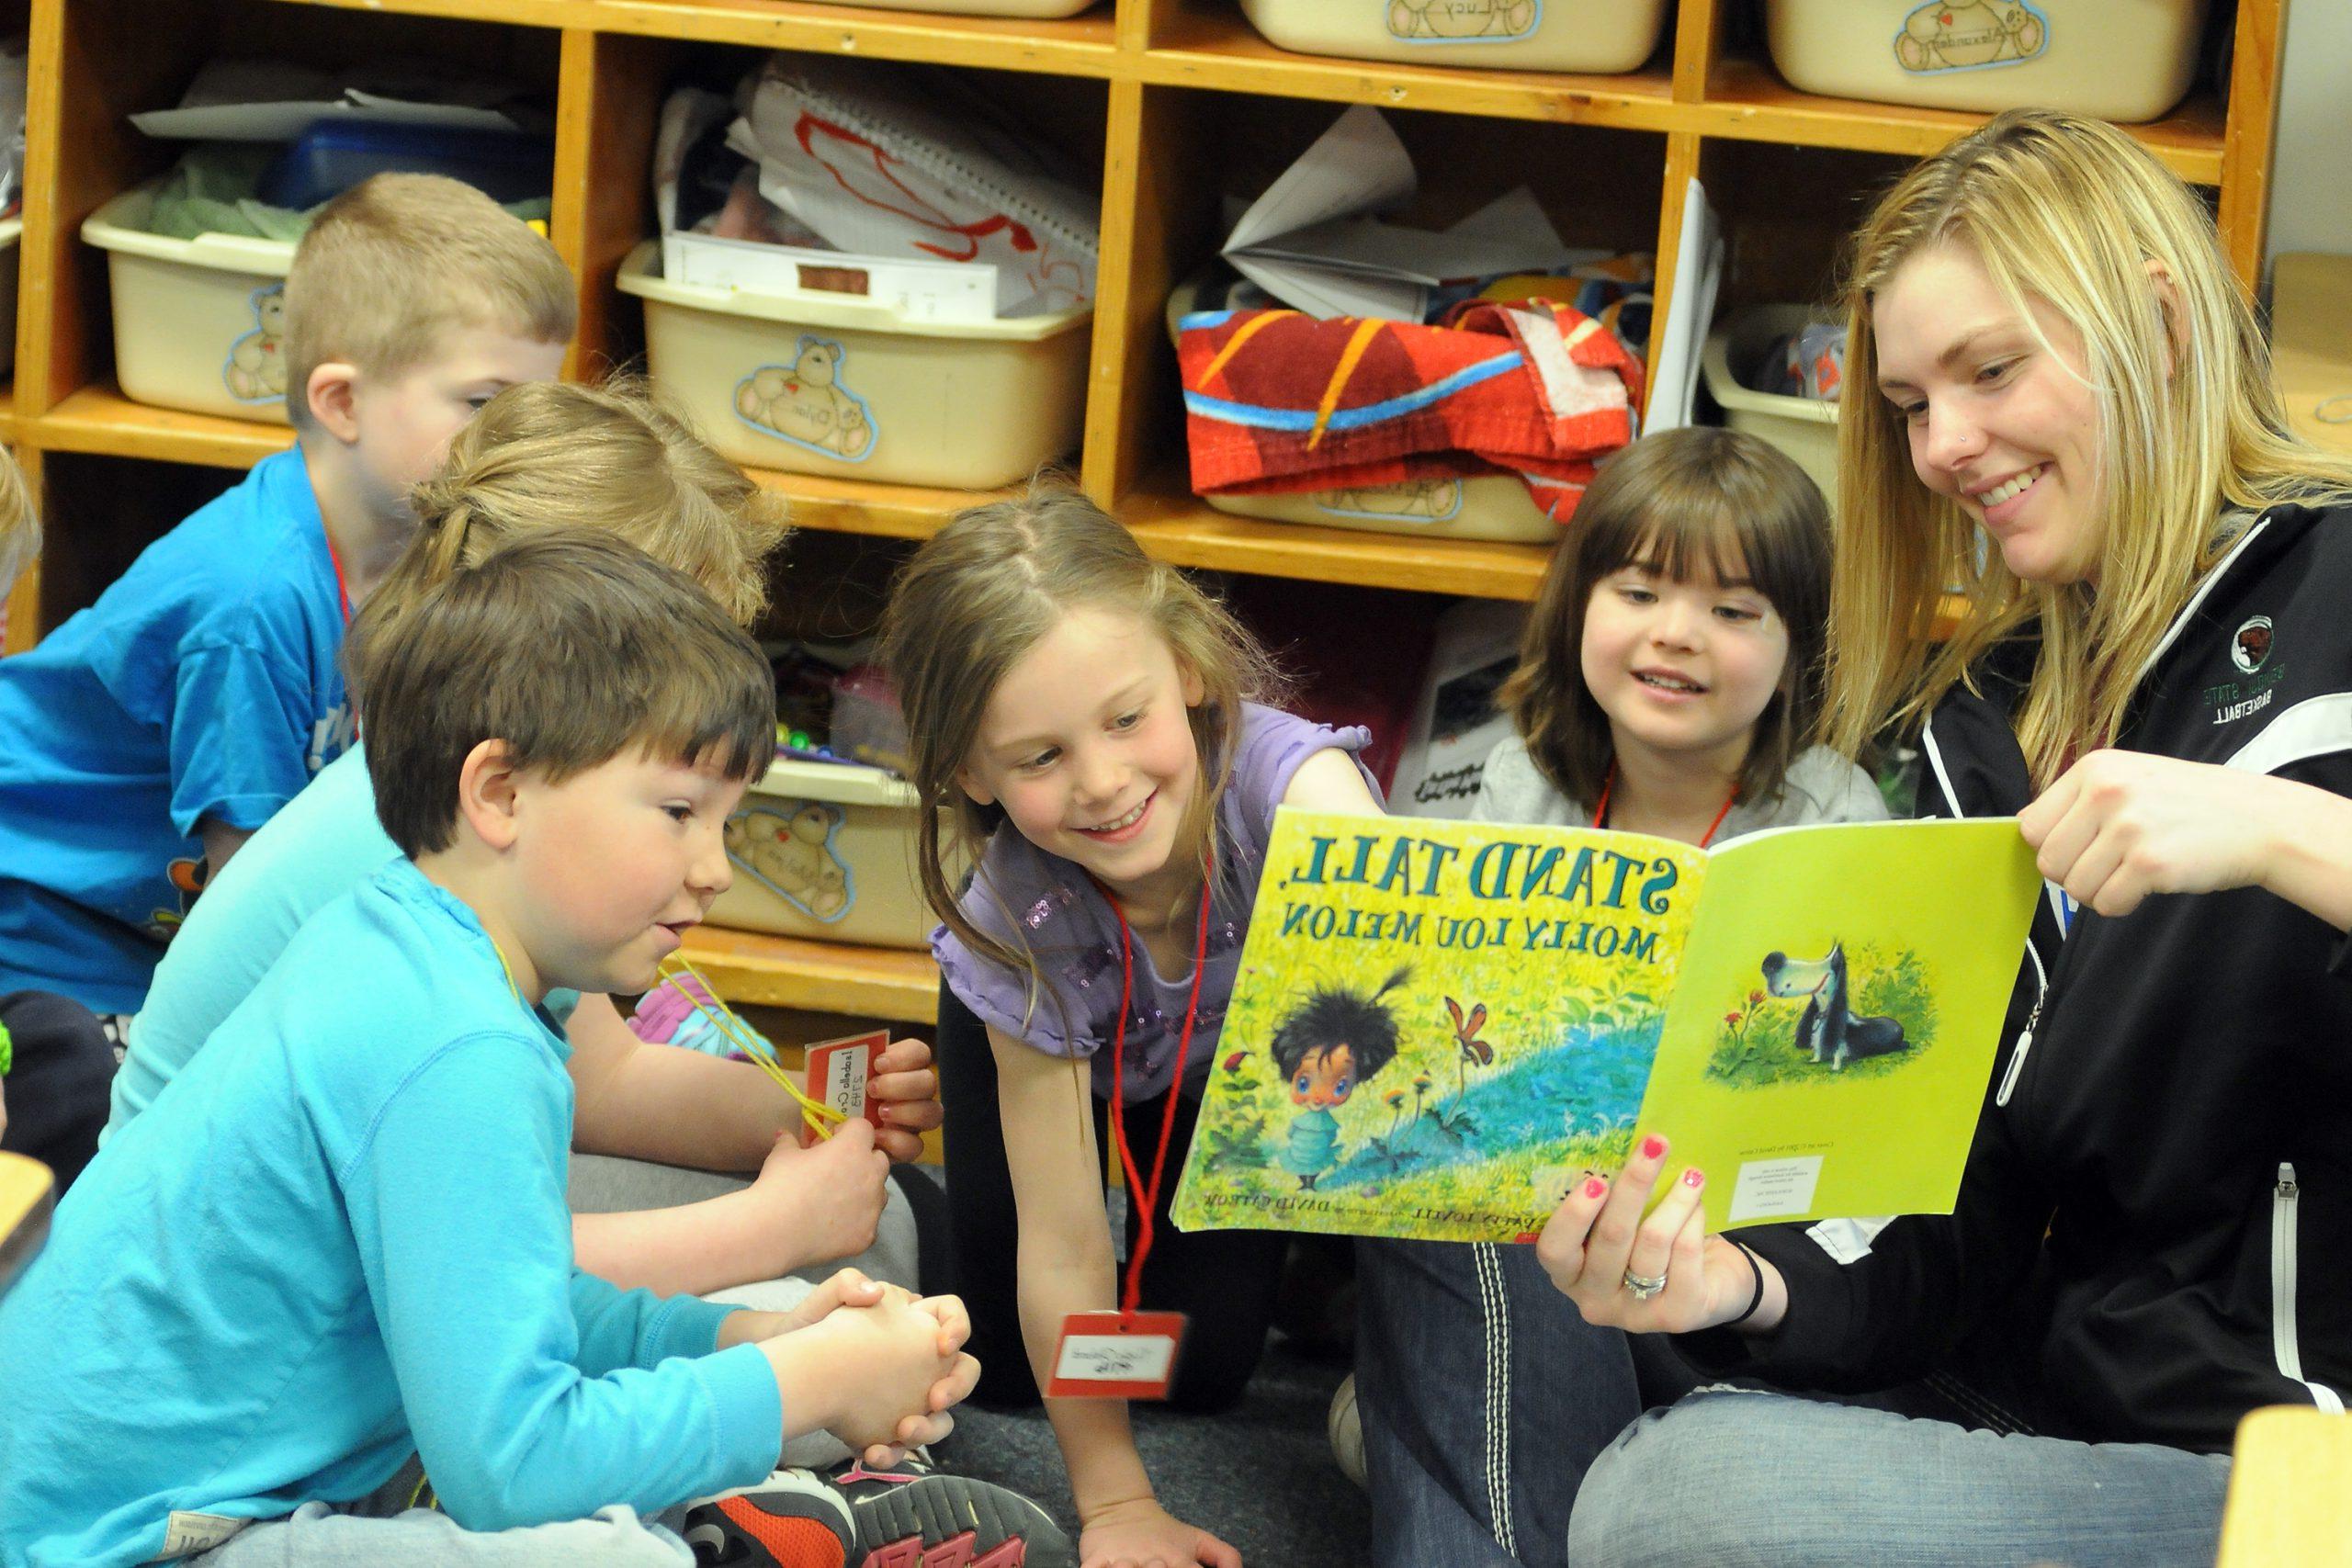 一位老师正在给一群学生朗读一本名叫《昂首挺立》的书，作者是Molly Lou Melon